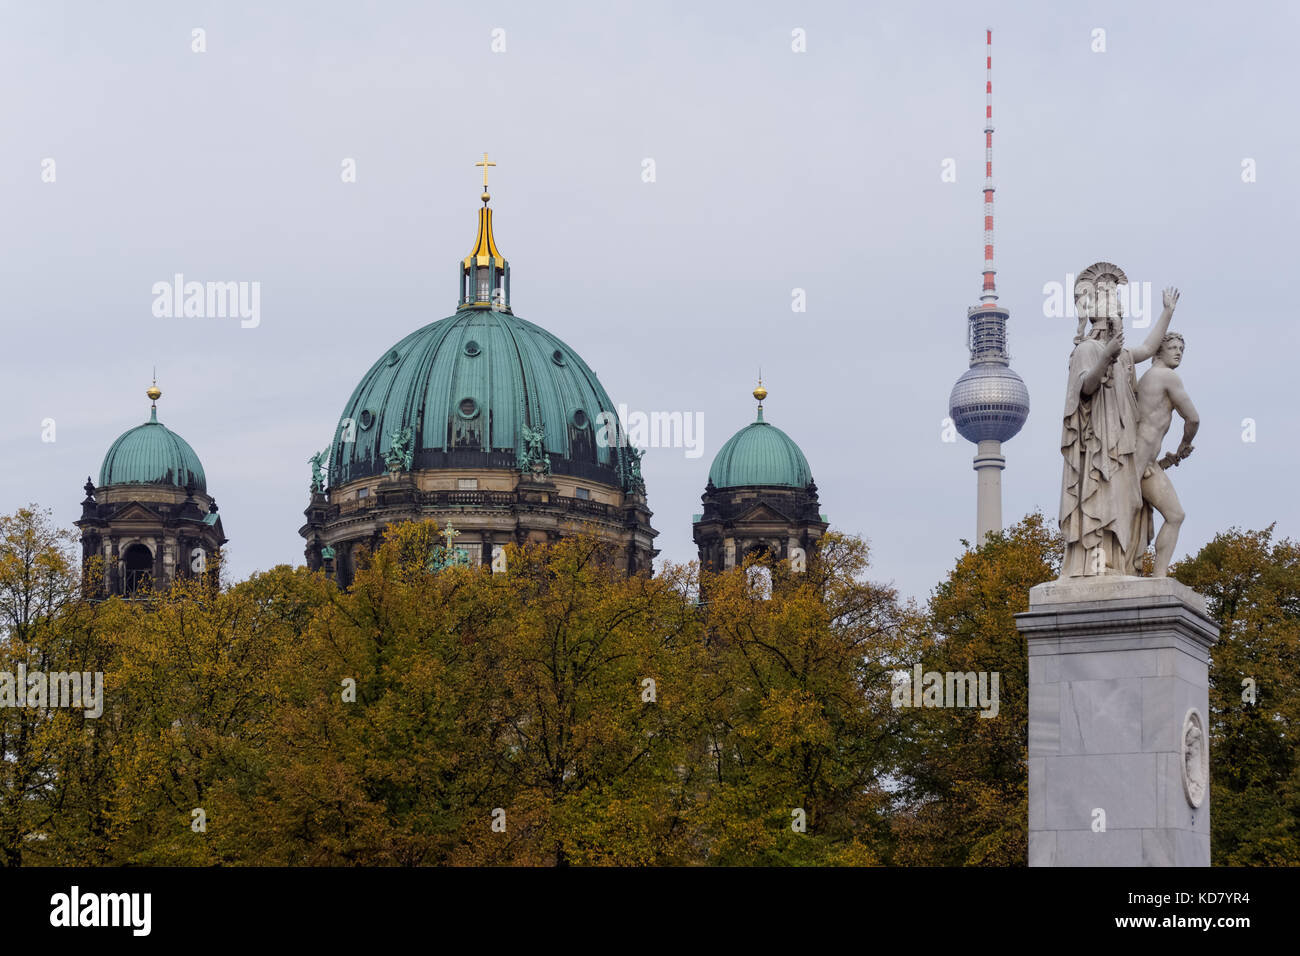 La Cathédrale de Berlin, la tour de télévision et le pont Schlossbrücke vu au-dessus du parc Lustgarten à Berlin, Allemagne Banque D'Images